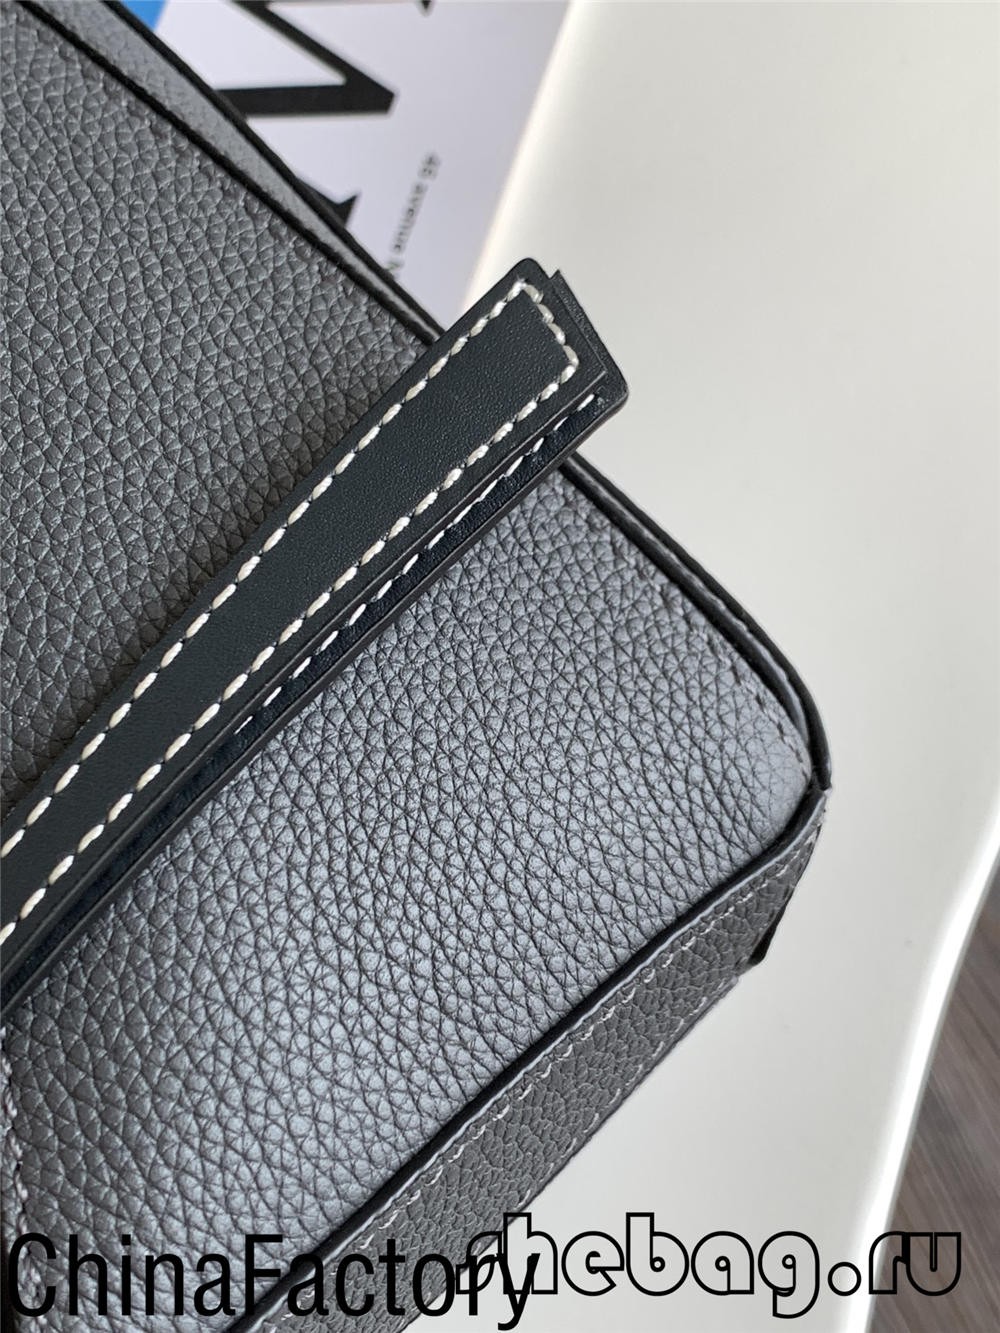 Đánh giá bản sao túi Loewe tốt nhất: Loewe Cubi (cập nhật 2022) - Chất lượng tốt nhất Túi Louis Vuitton giả trên Cửa hàng trực tuyến, Túi thiết kế bản sao ru